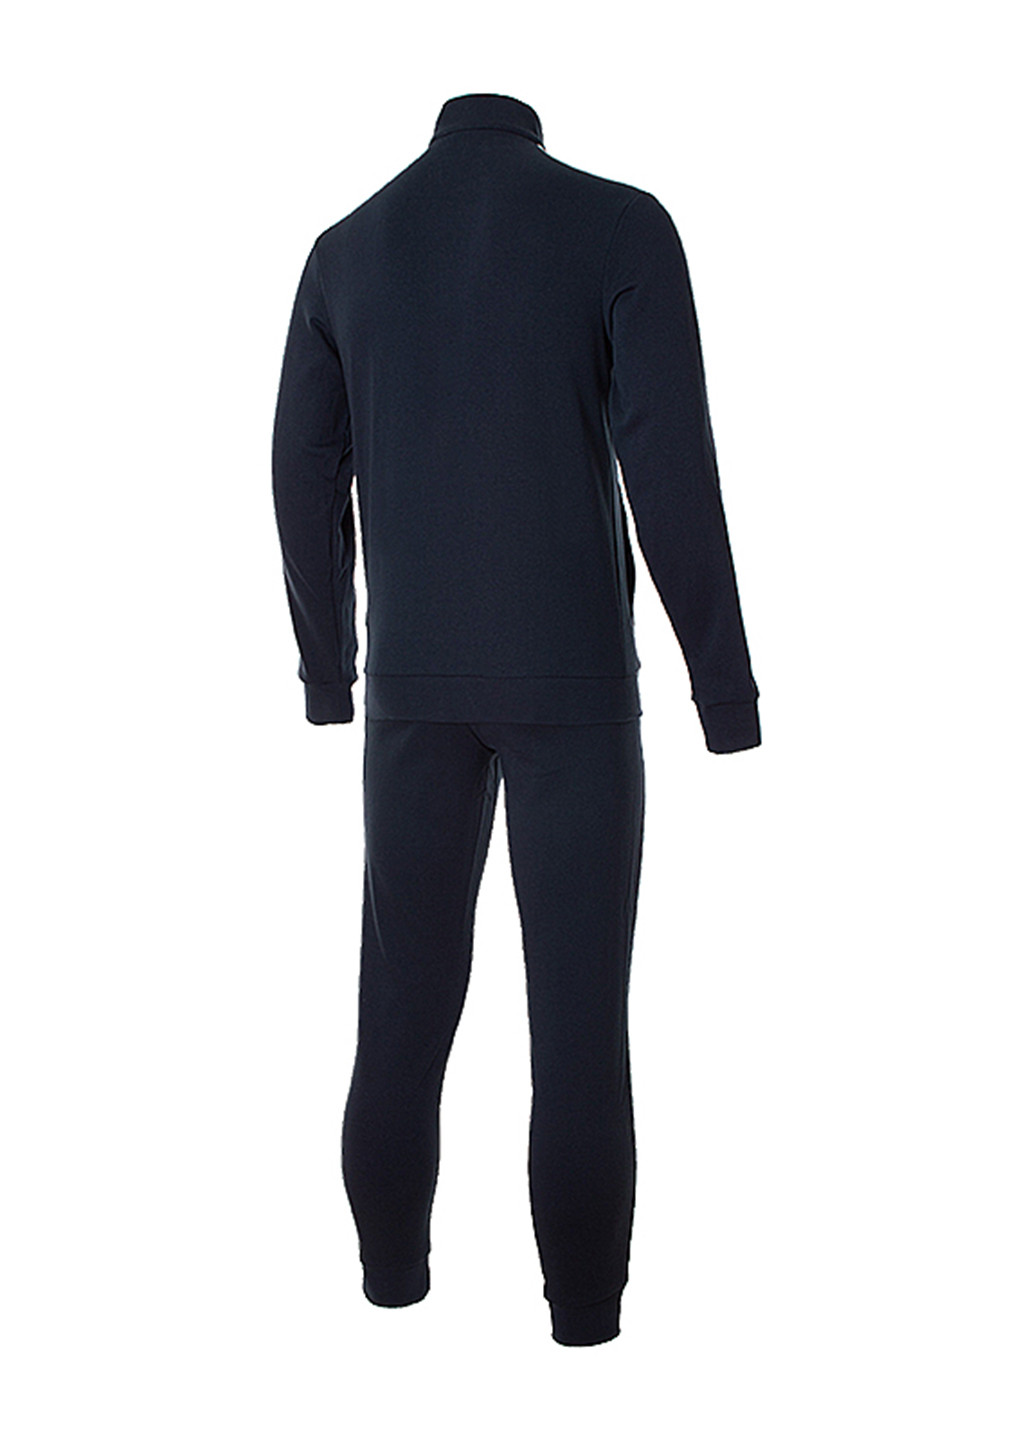 Темно-синий демисезонный костюм (кофта, брюки) брючный adidas Originals Relax